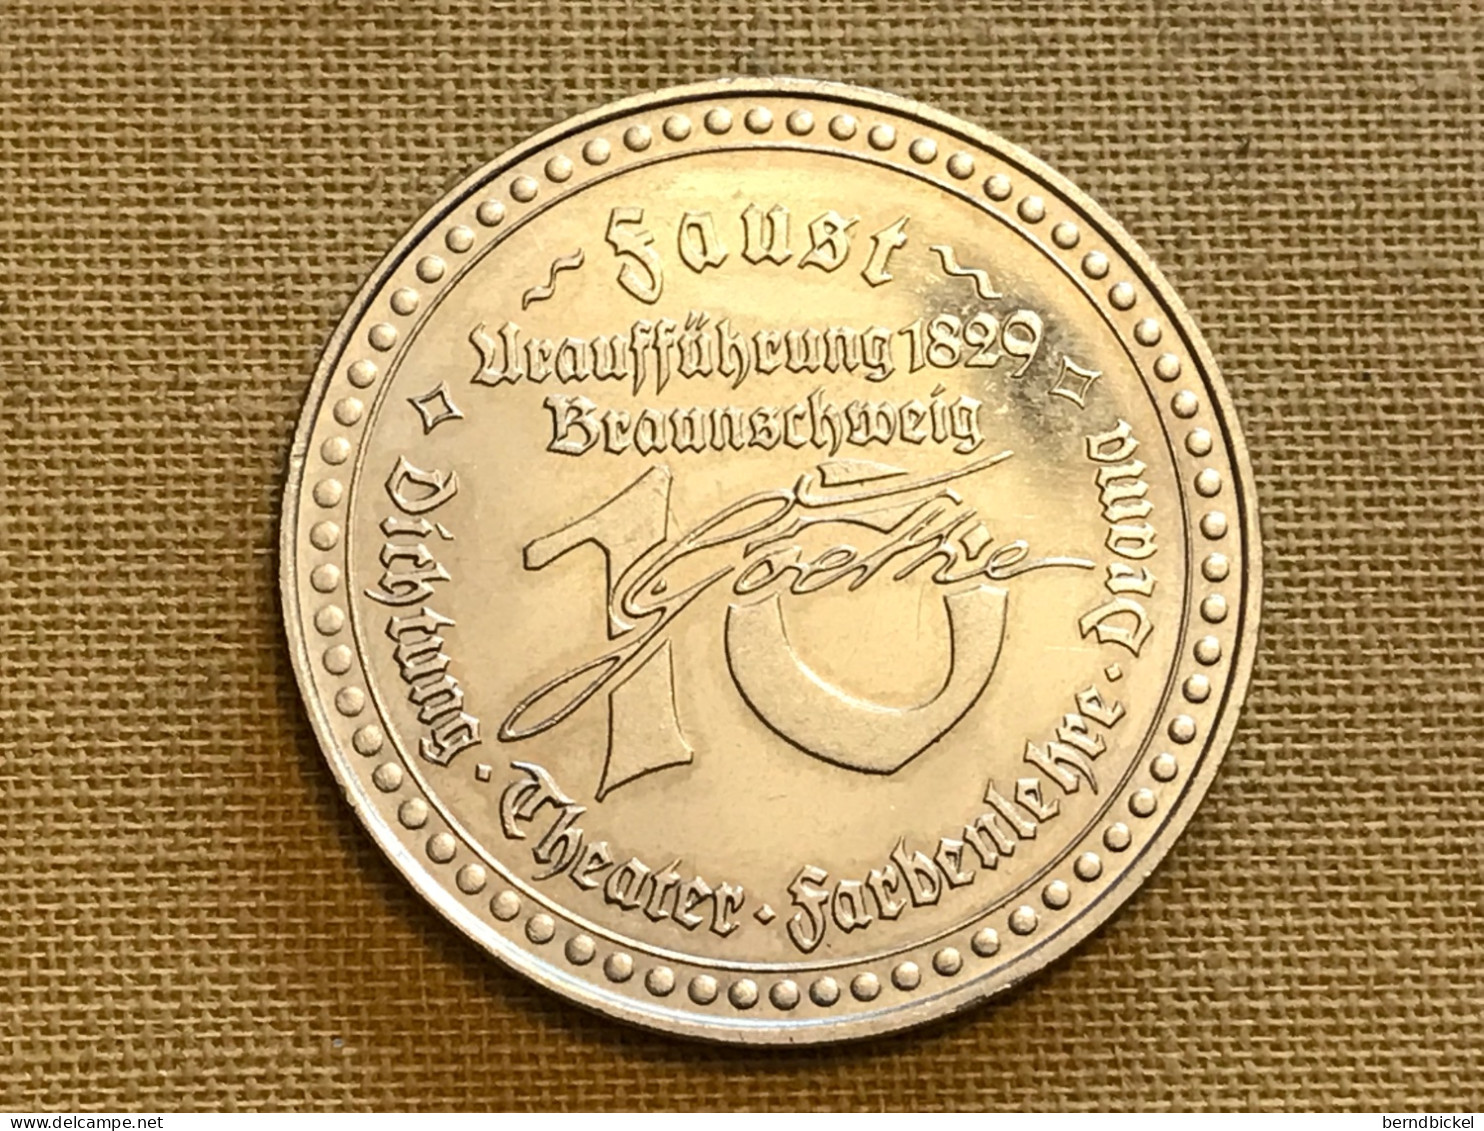 Münze Medaille Deutschland Faust Uraufführung 1829 Braunschweig - Souvenirmunten (elongated Coins)